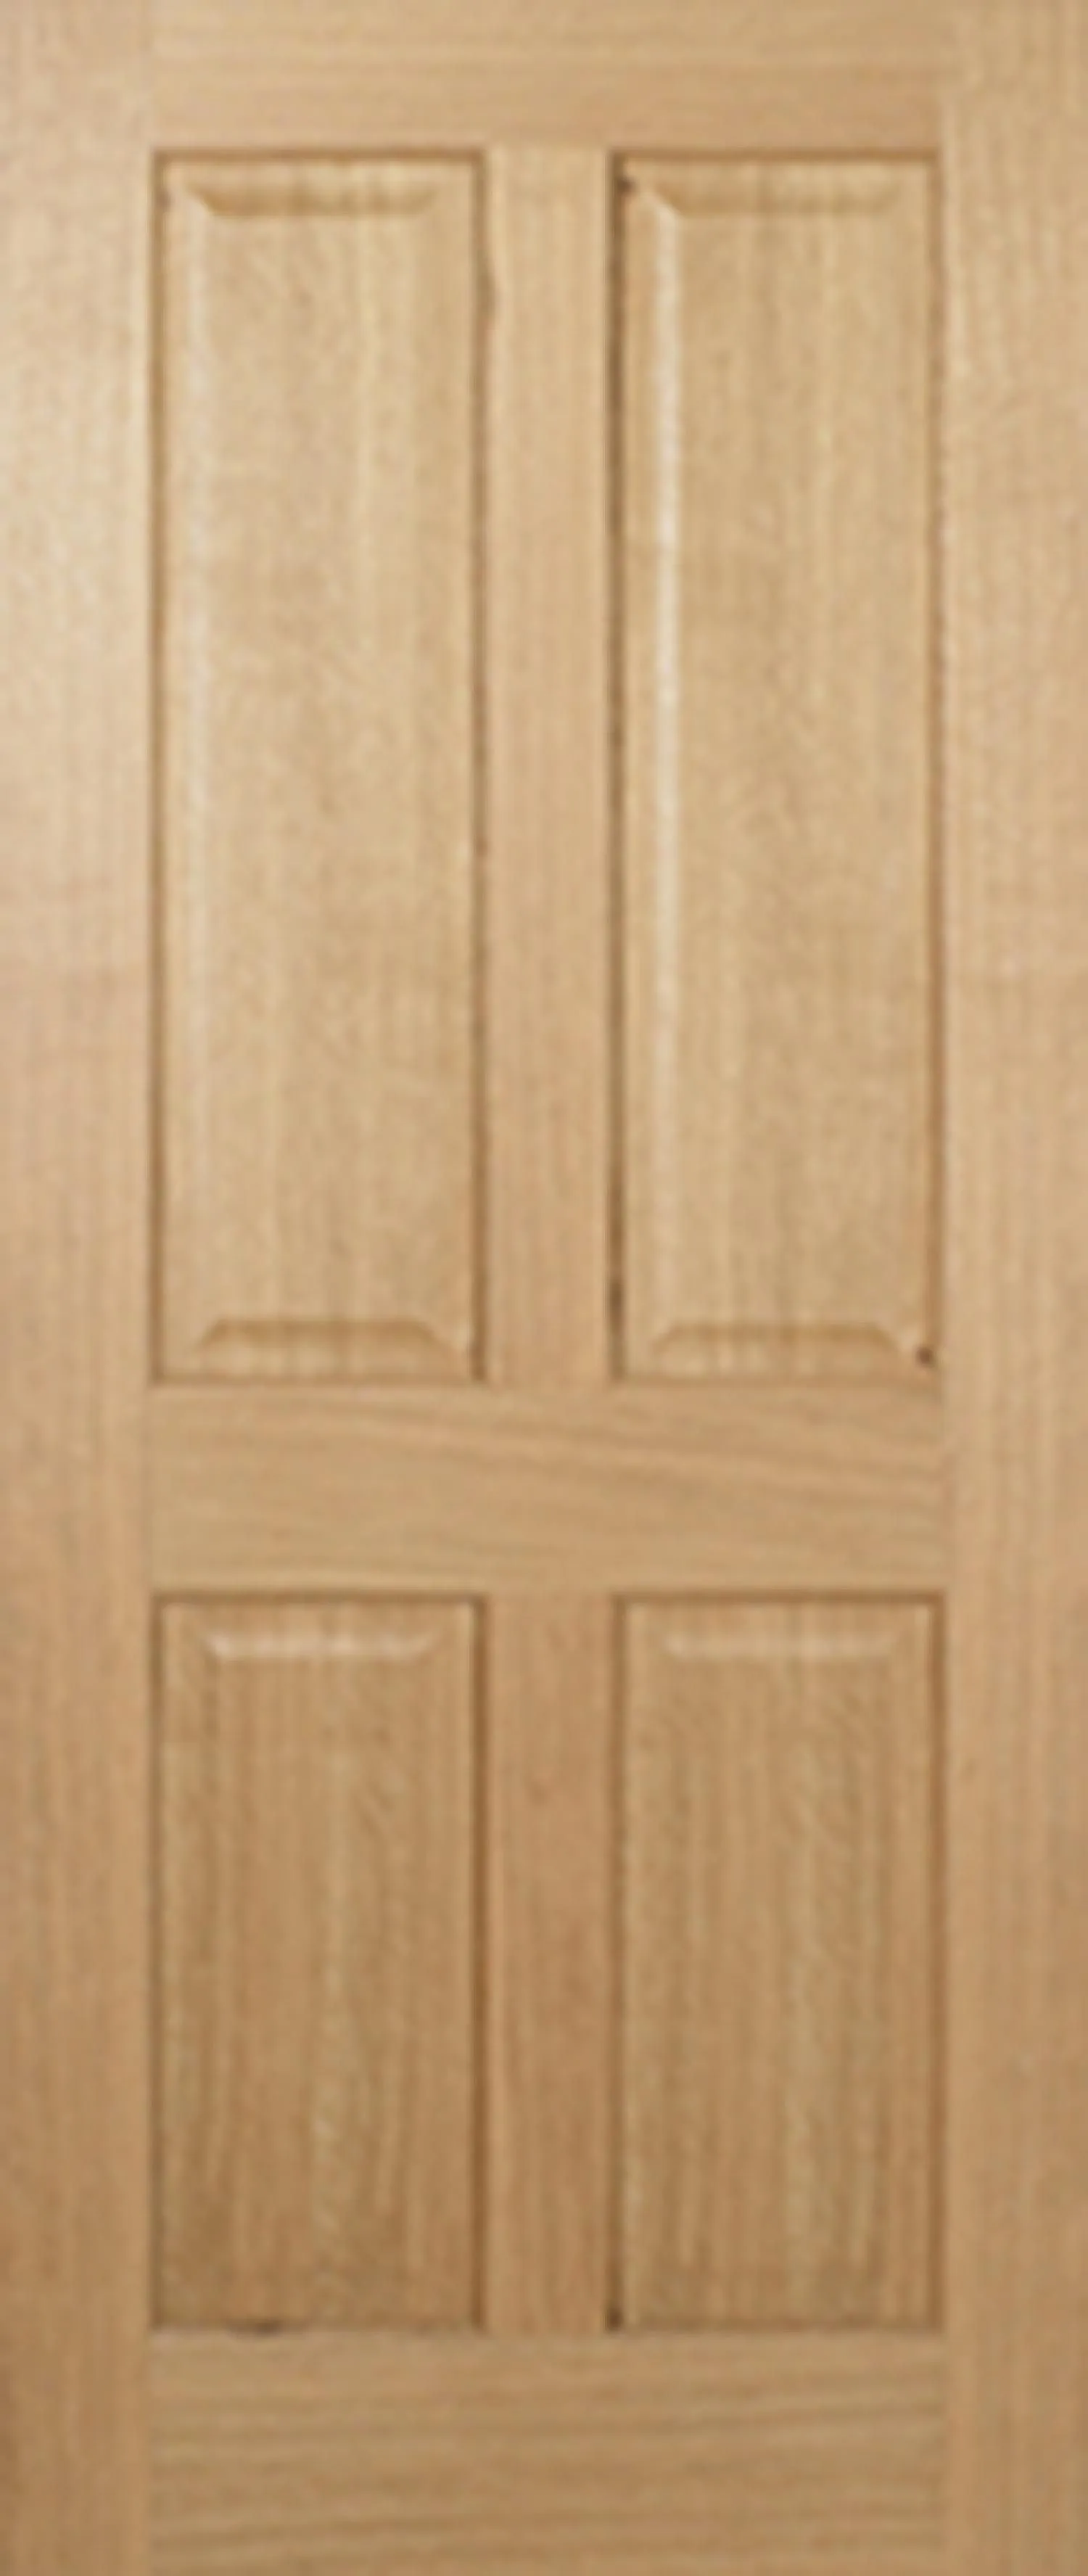 Regency Solid Core FD30 Internal Door - Unfinished - 4P Non Raised  1981 x 762mm Oak   FCOREG4P30